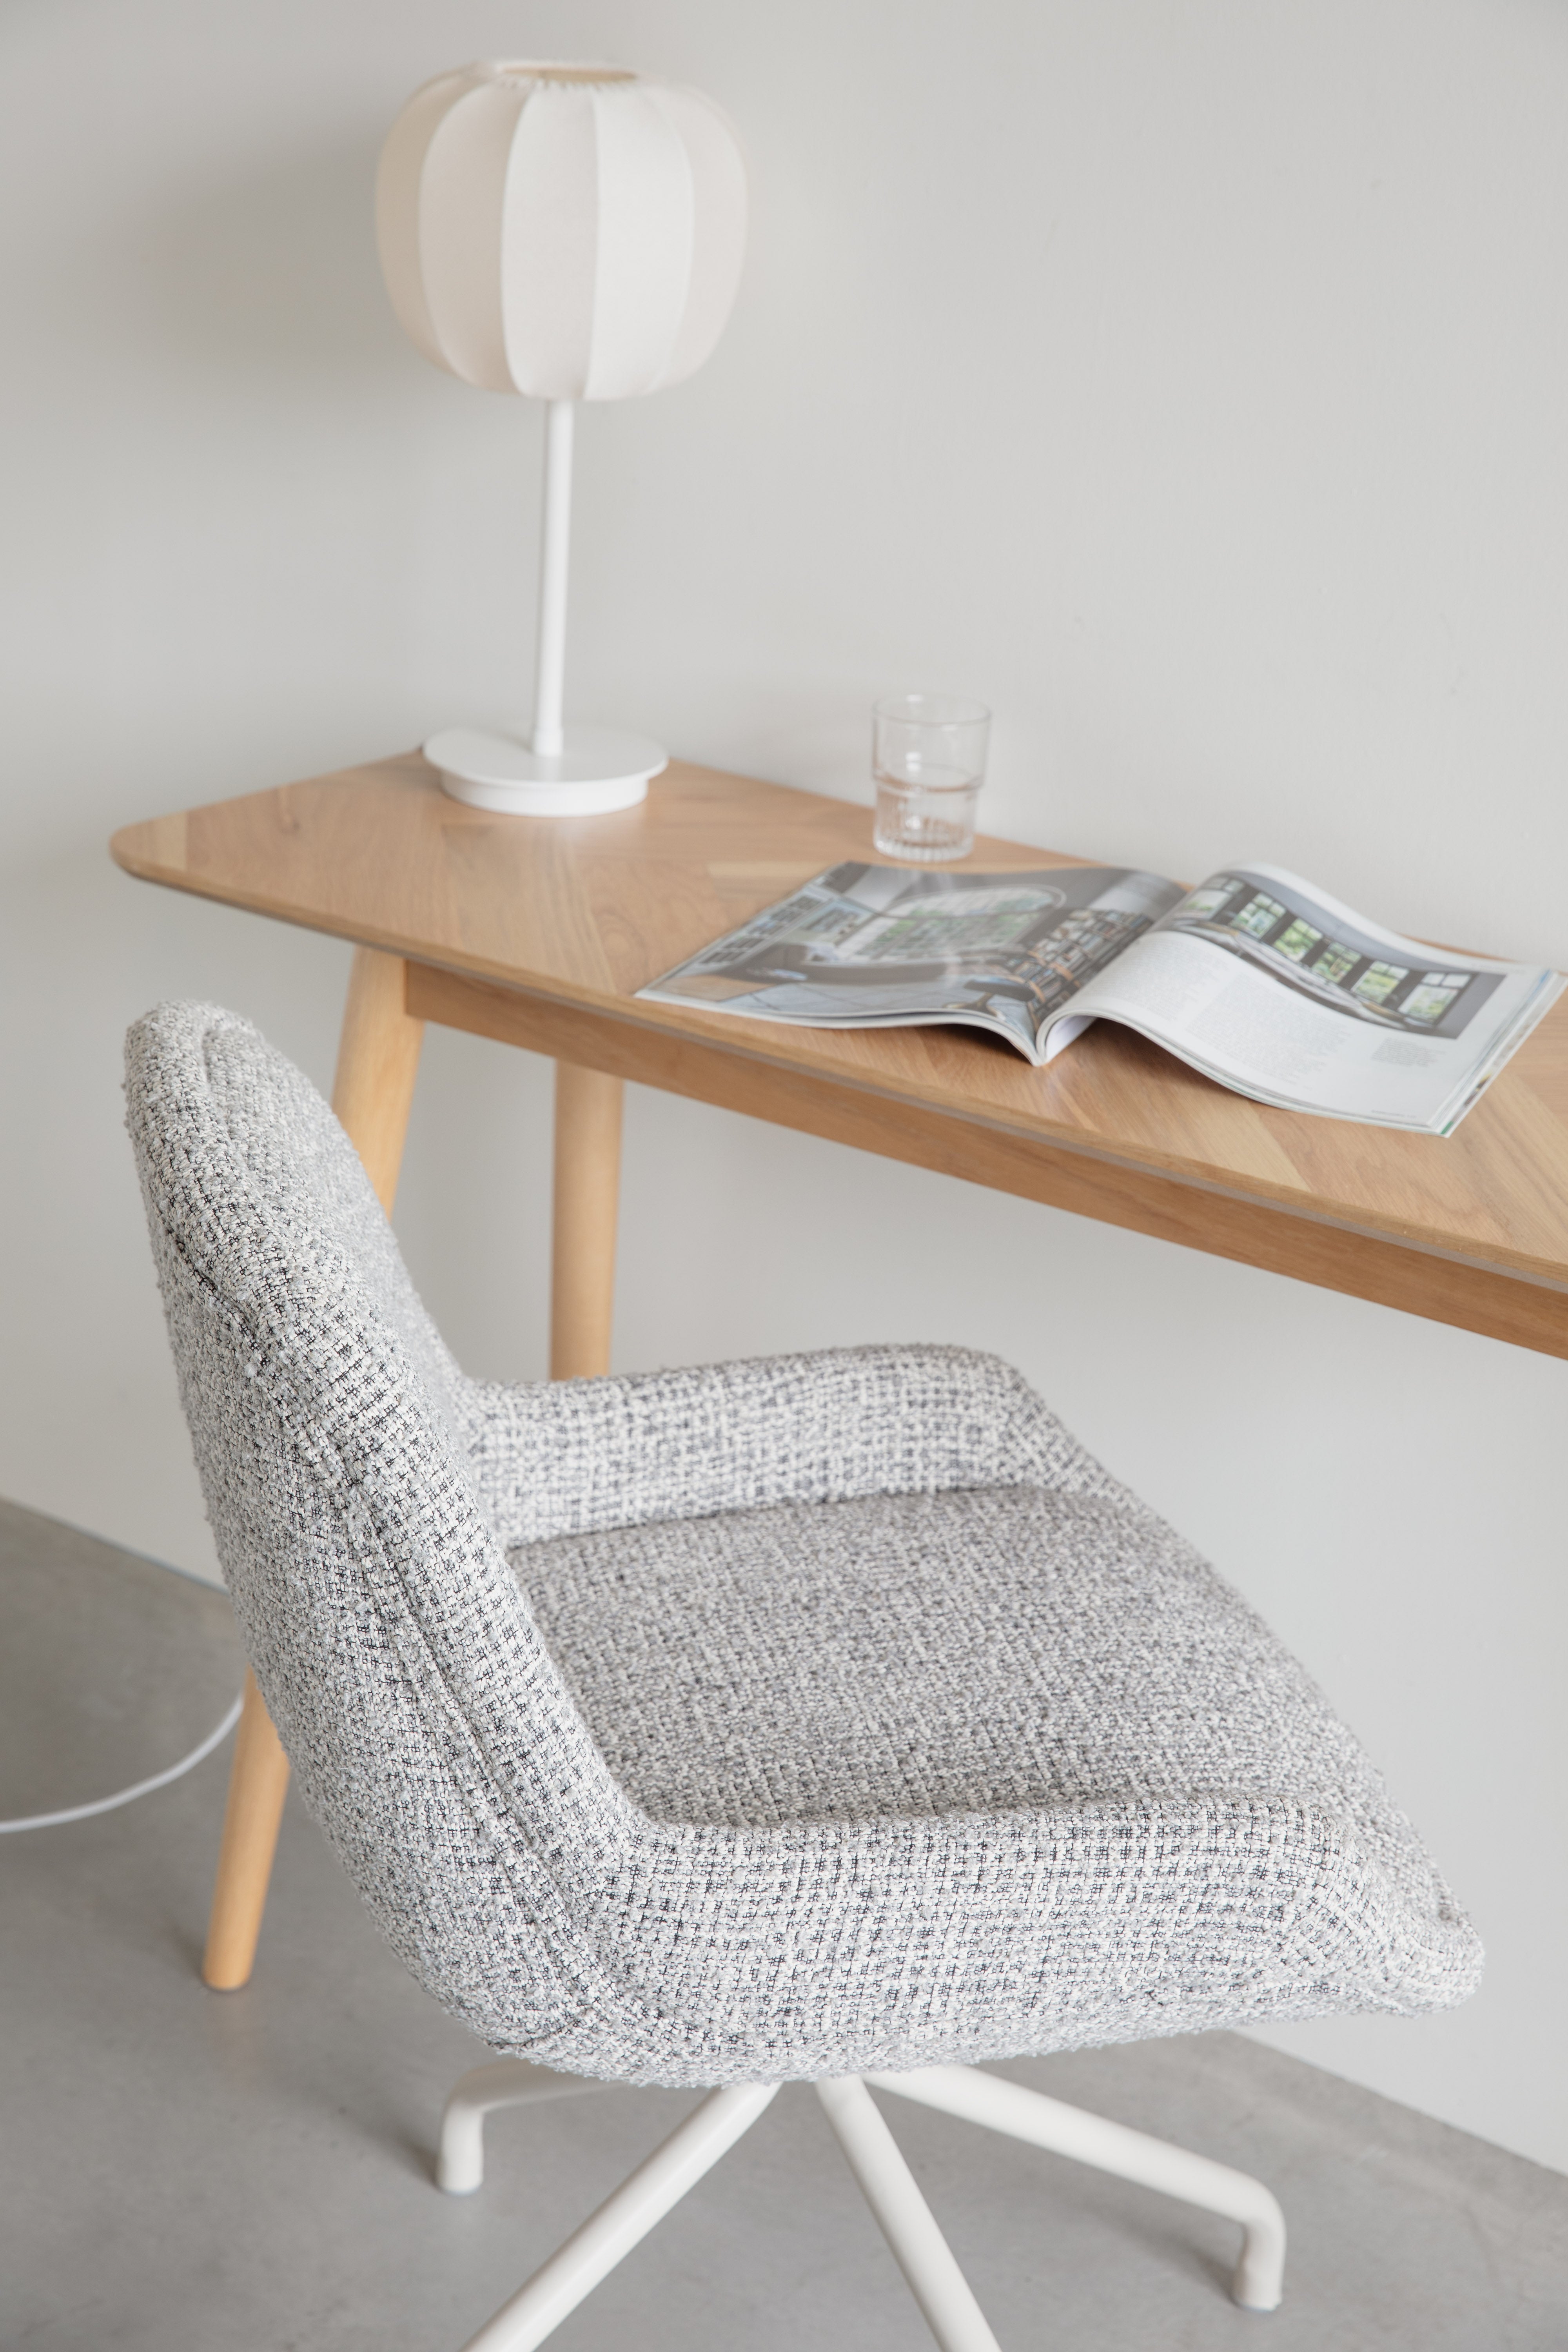 Stuhl Lisa in Grau präsentiert im Onlineshop von KAQTU Design AG. Stuhl ist von White Label Living